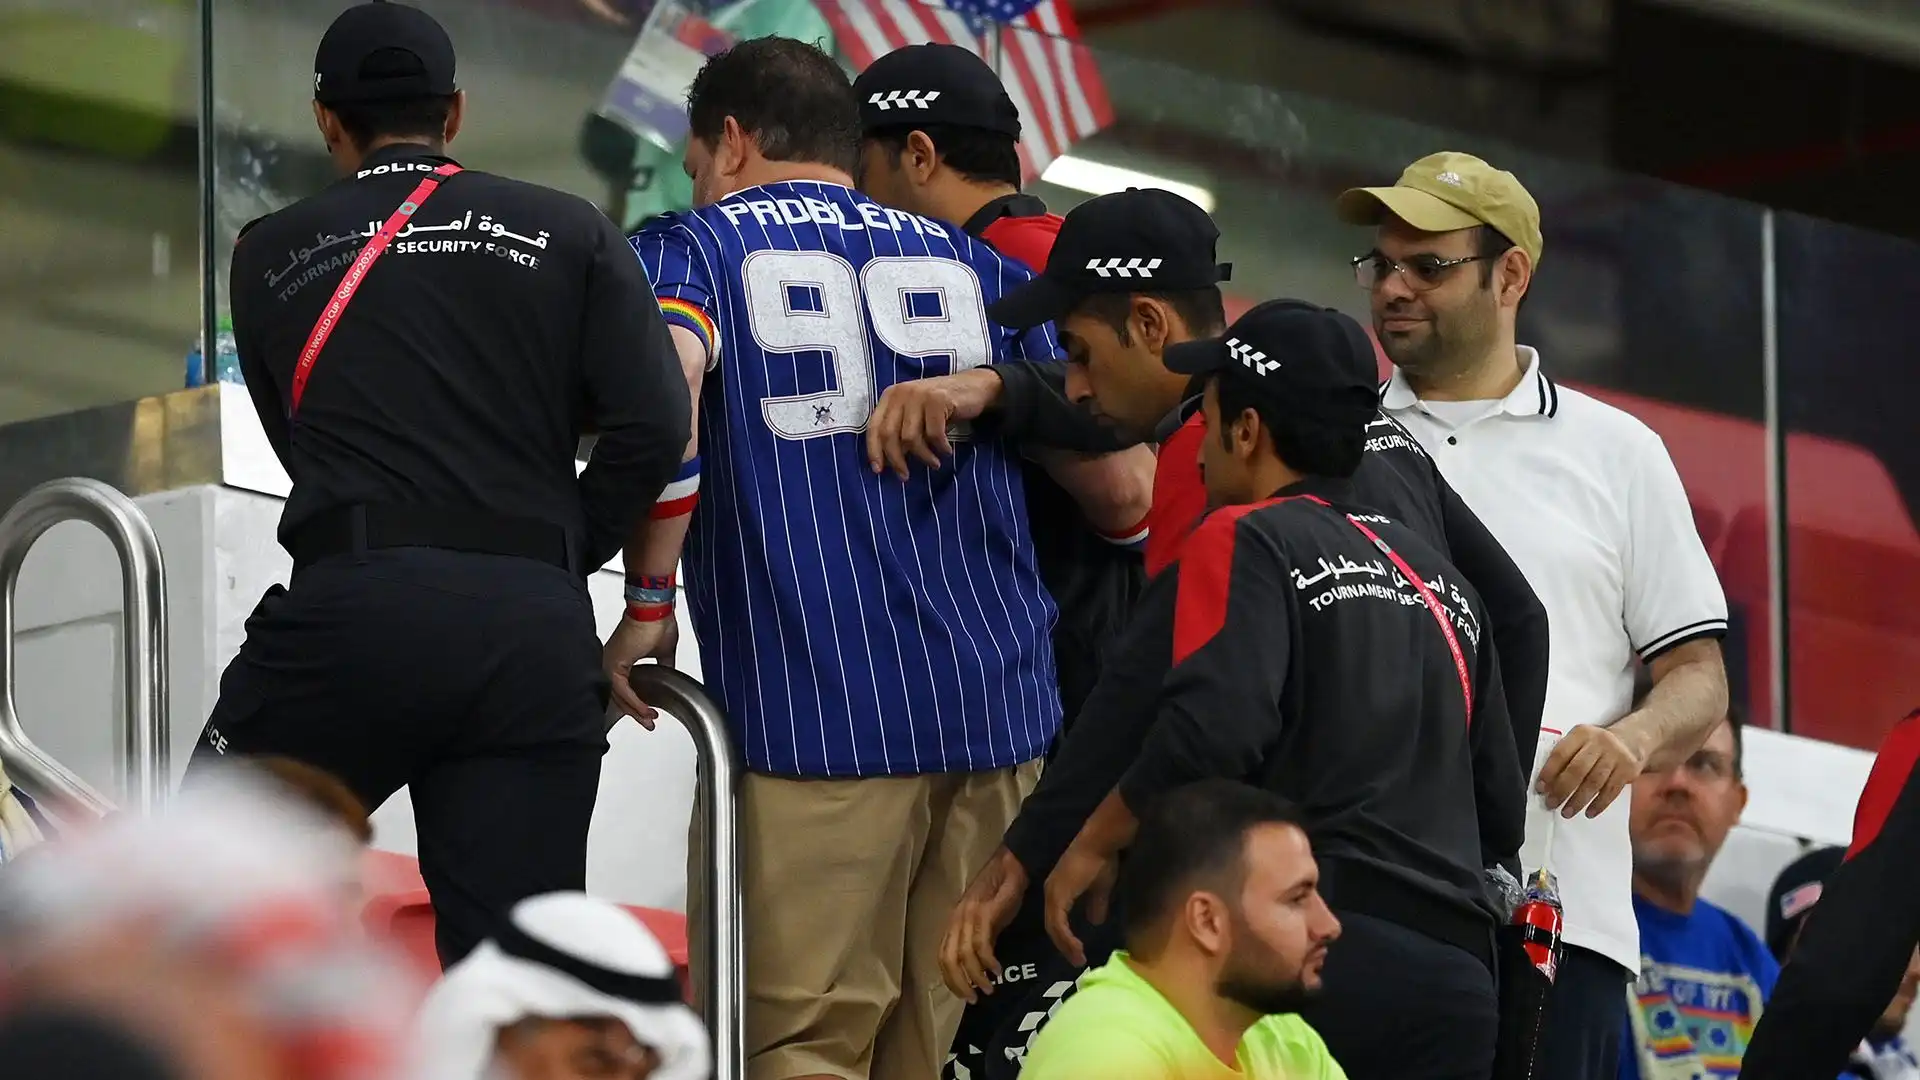 Prima della partita dei Mondiali tra Stati Uniti e Iran, un tifoso americano è stato scortato fuori dallo stadio Al-Thumana per aver indossato al braccio una fascia arcobaleno, in difesa dei diritti LGBTQ.